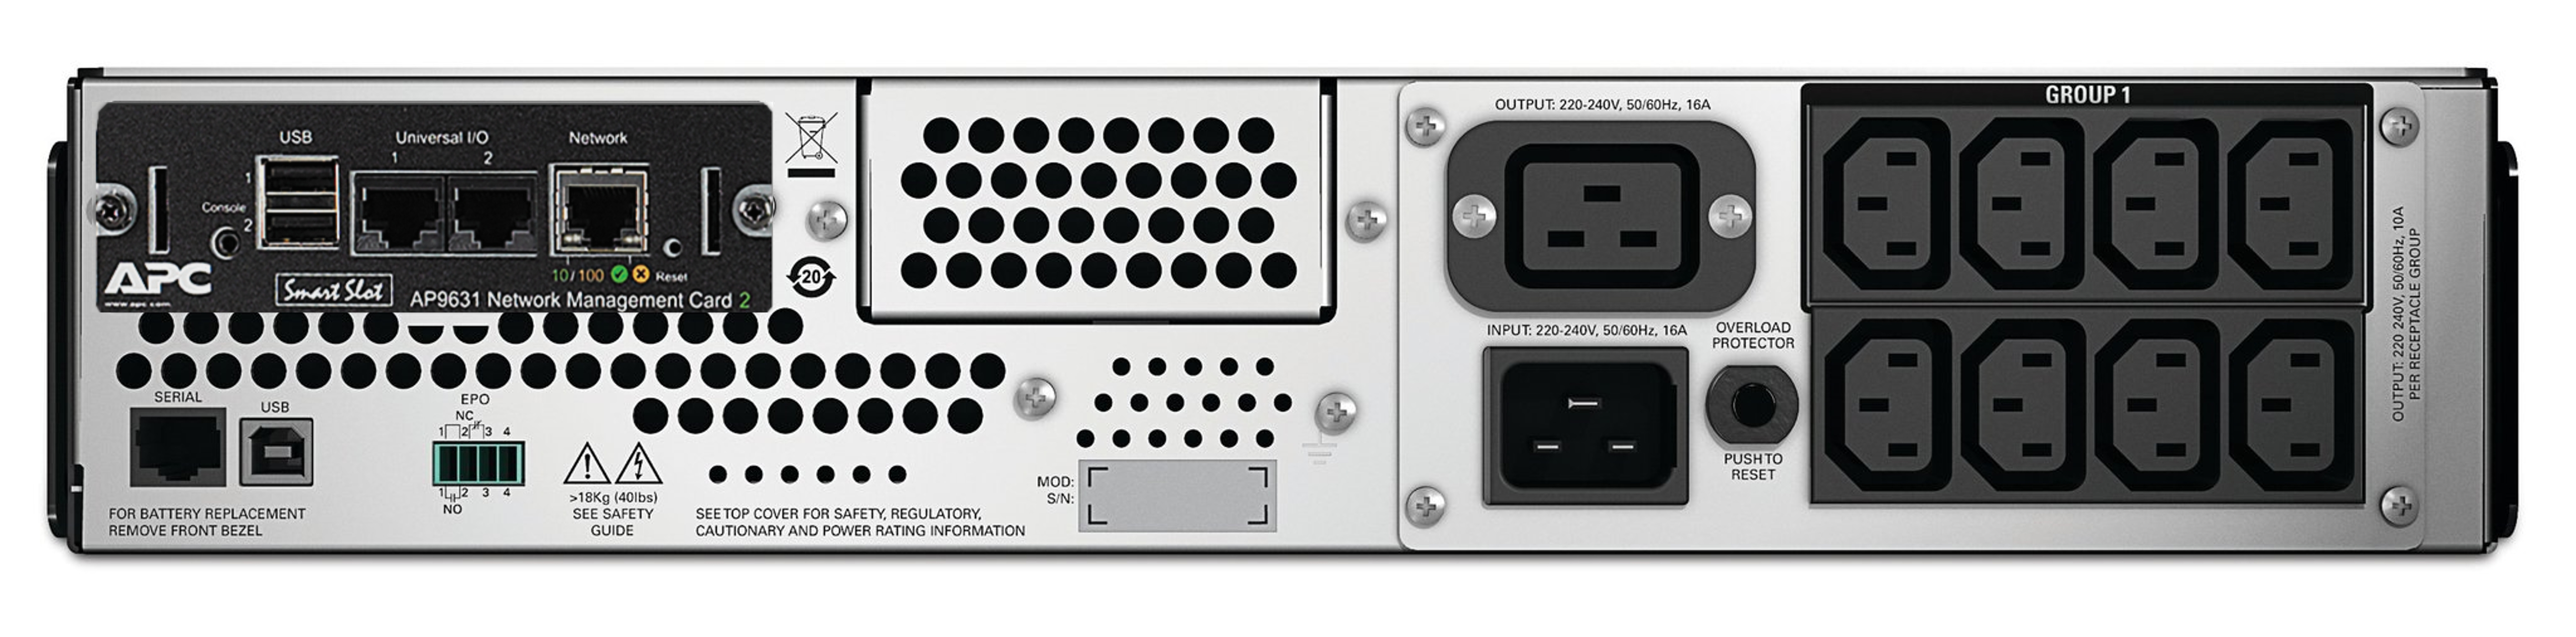 APC Smart-UPS, line-interactive, 2200VA, rackmount 2U, 230V, 8*IEC C13+2*IEC C19 outlets, network card, AVR, LCD